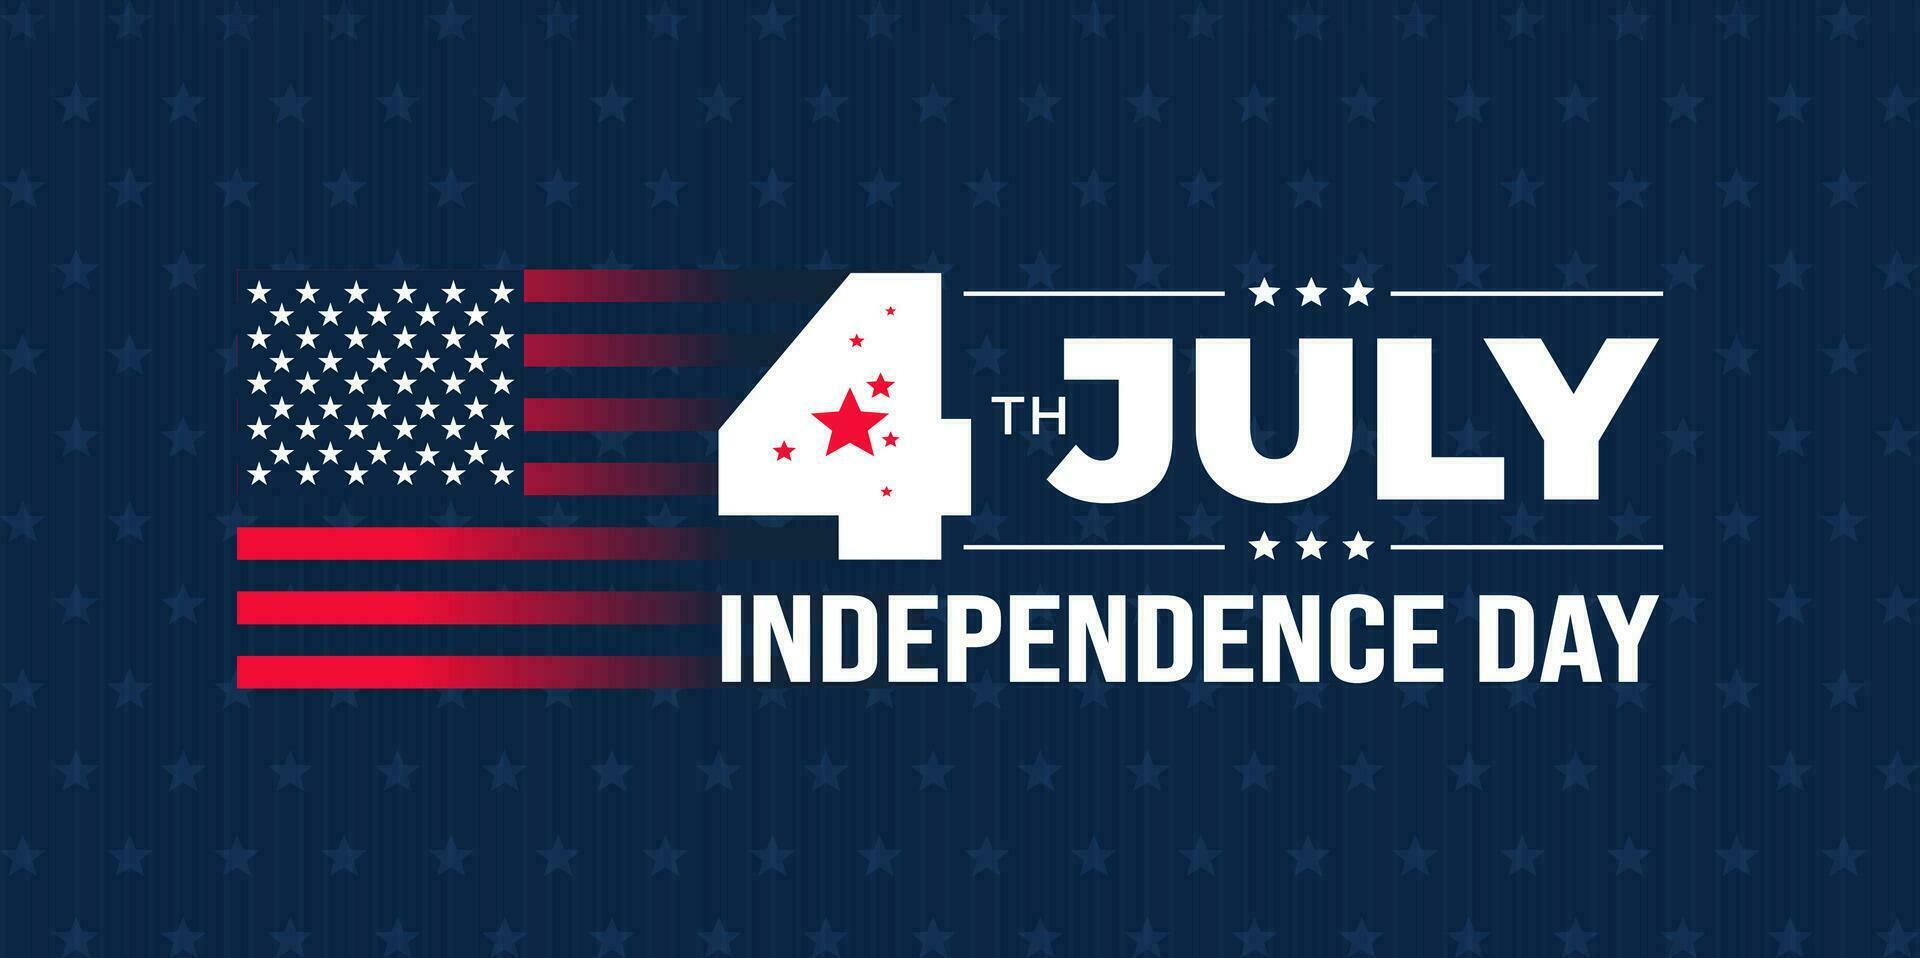 4º do Julho Unidos estados independência dia celebração promoção publicidade fundo, poster, cartão ou bandeira modelo com americano bandeira e tipografia. independência dia EUA festivo decoração. vetor